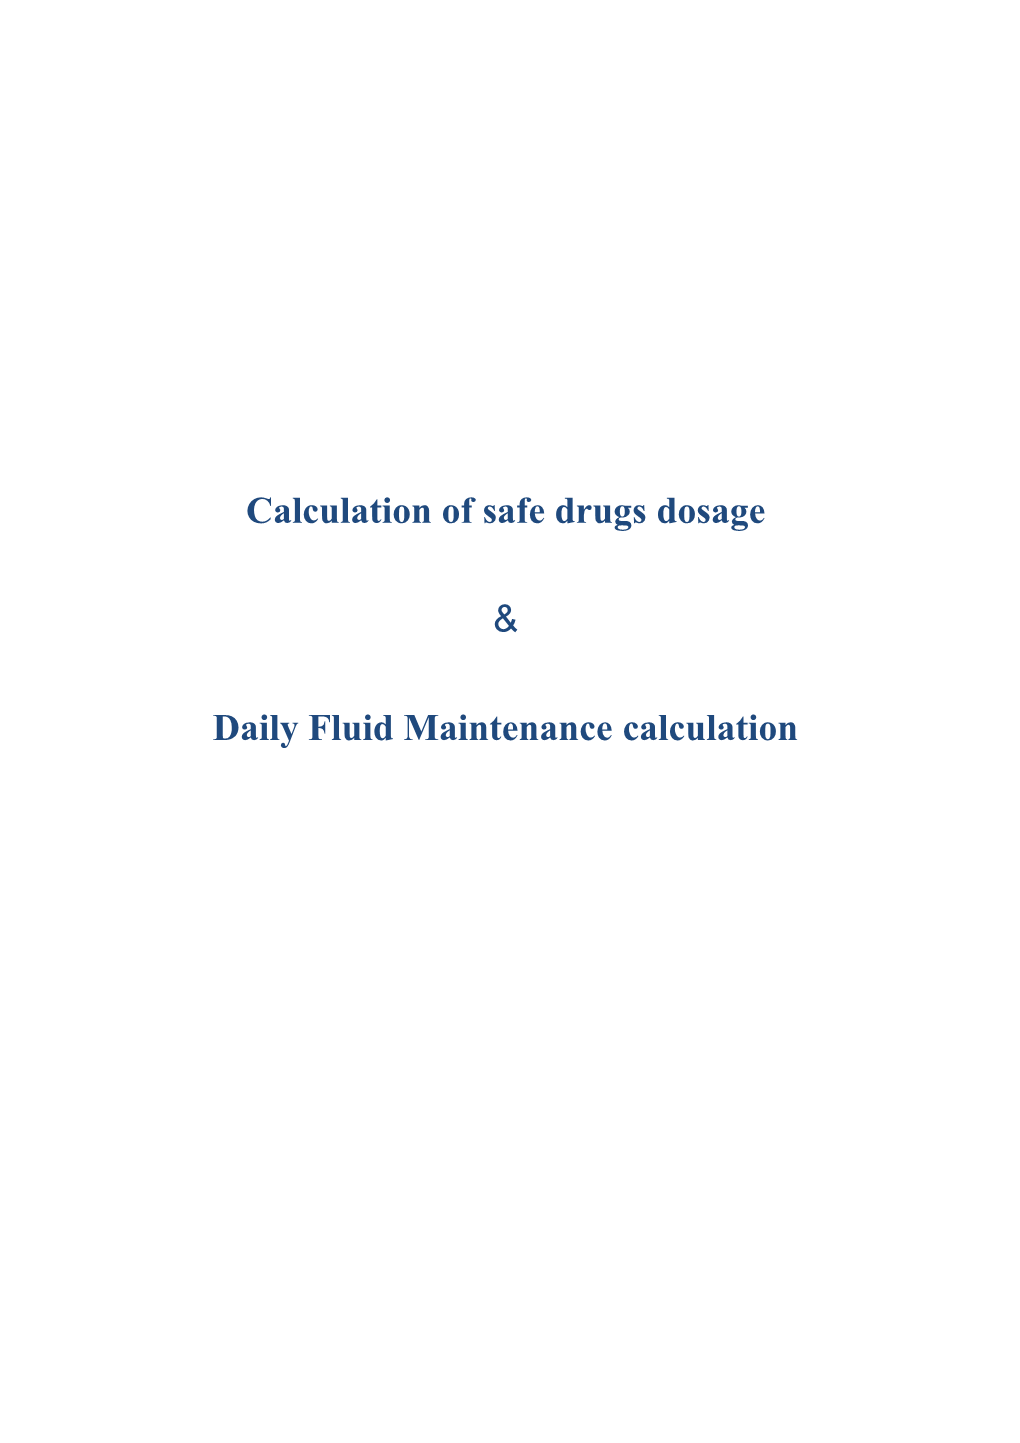 Calculation of Safe Drugs Dosage